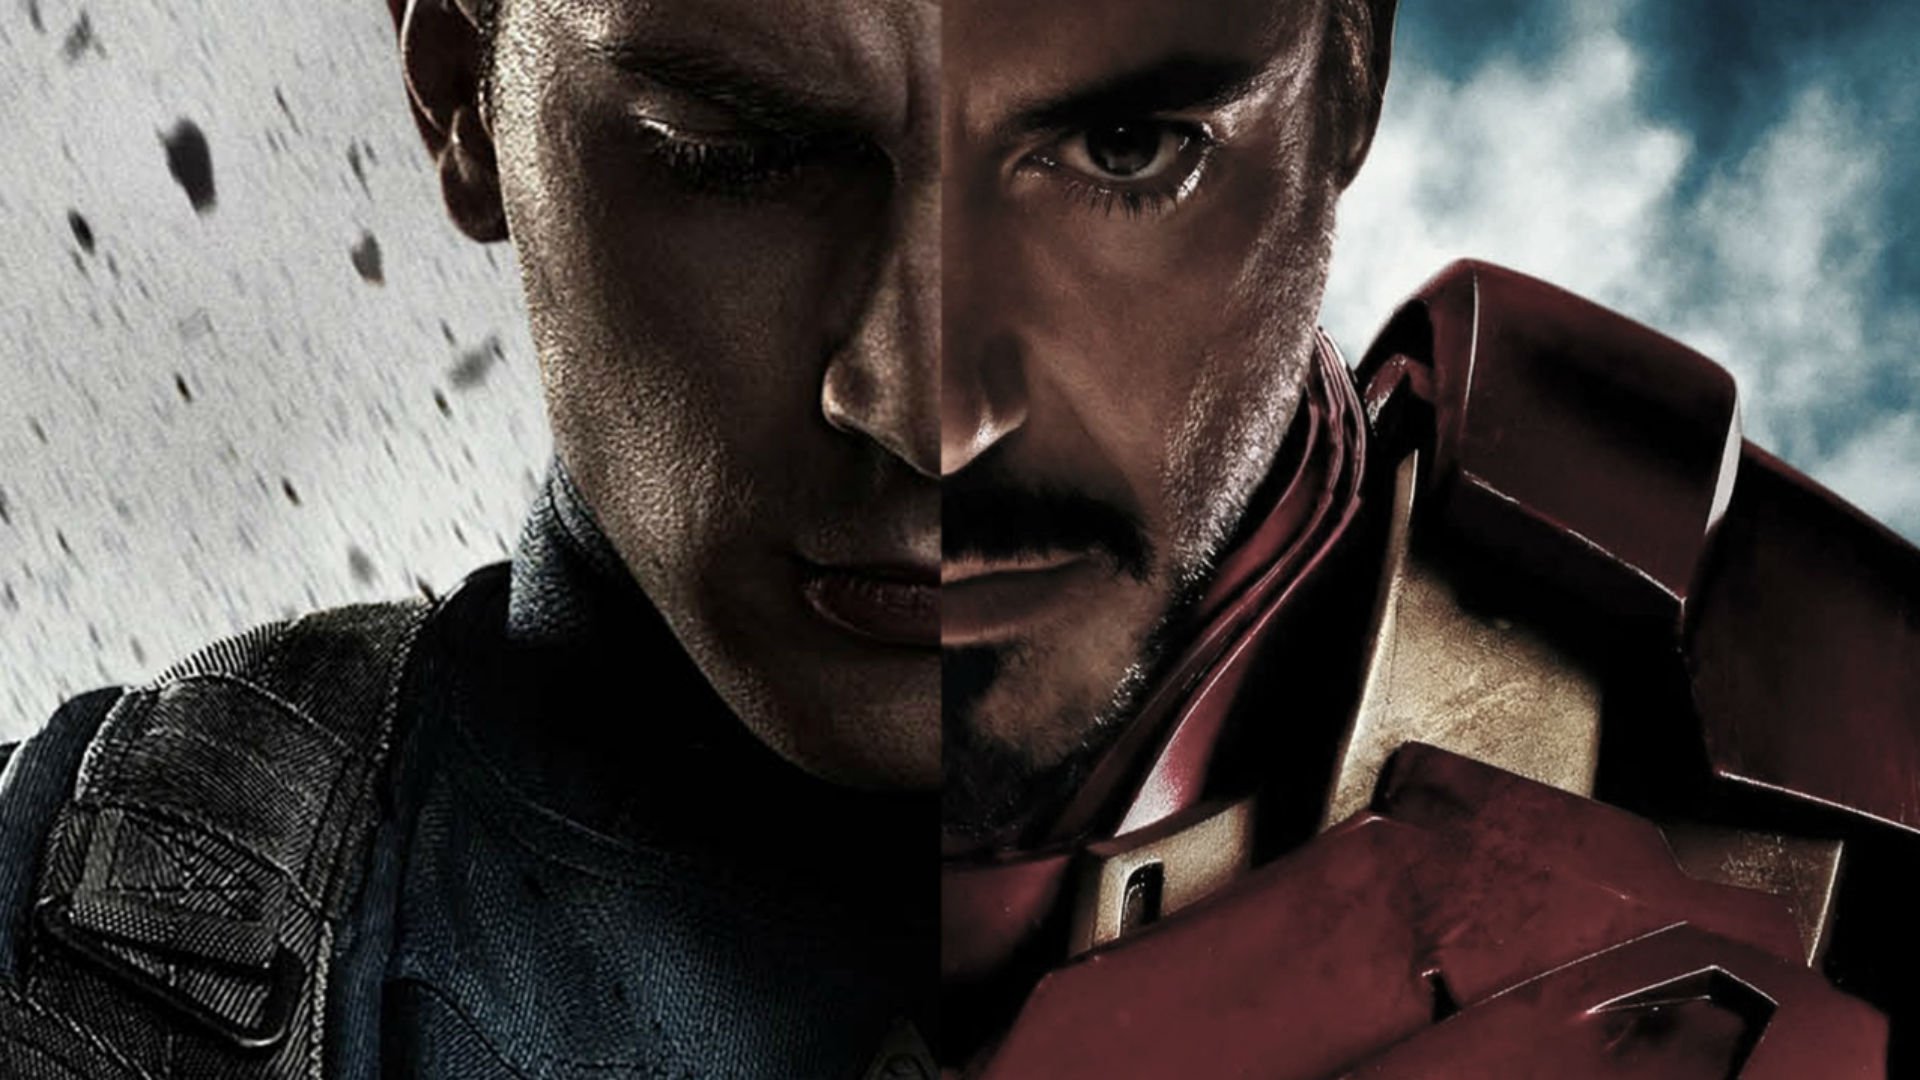 18+] Captain America And Iron Man Wallpapers - WallpaperSafari